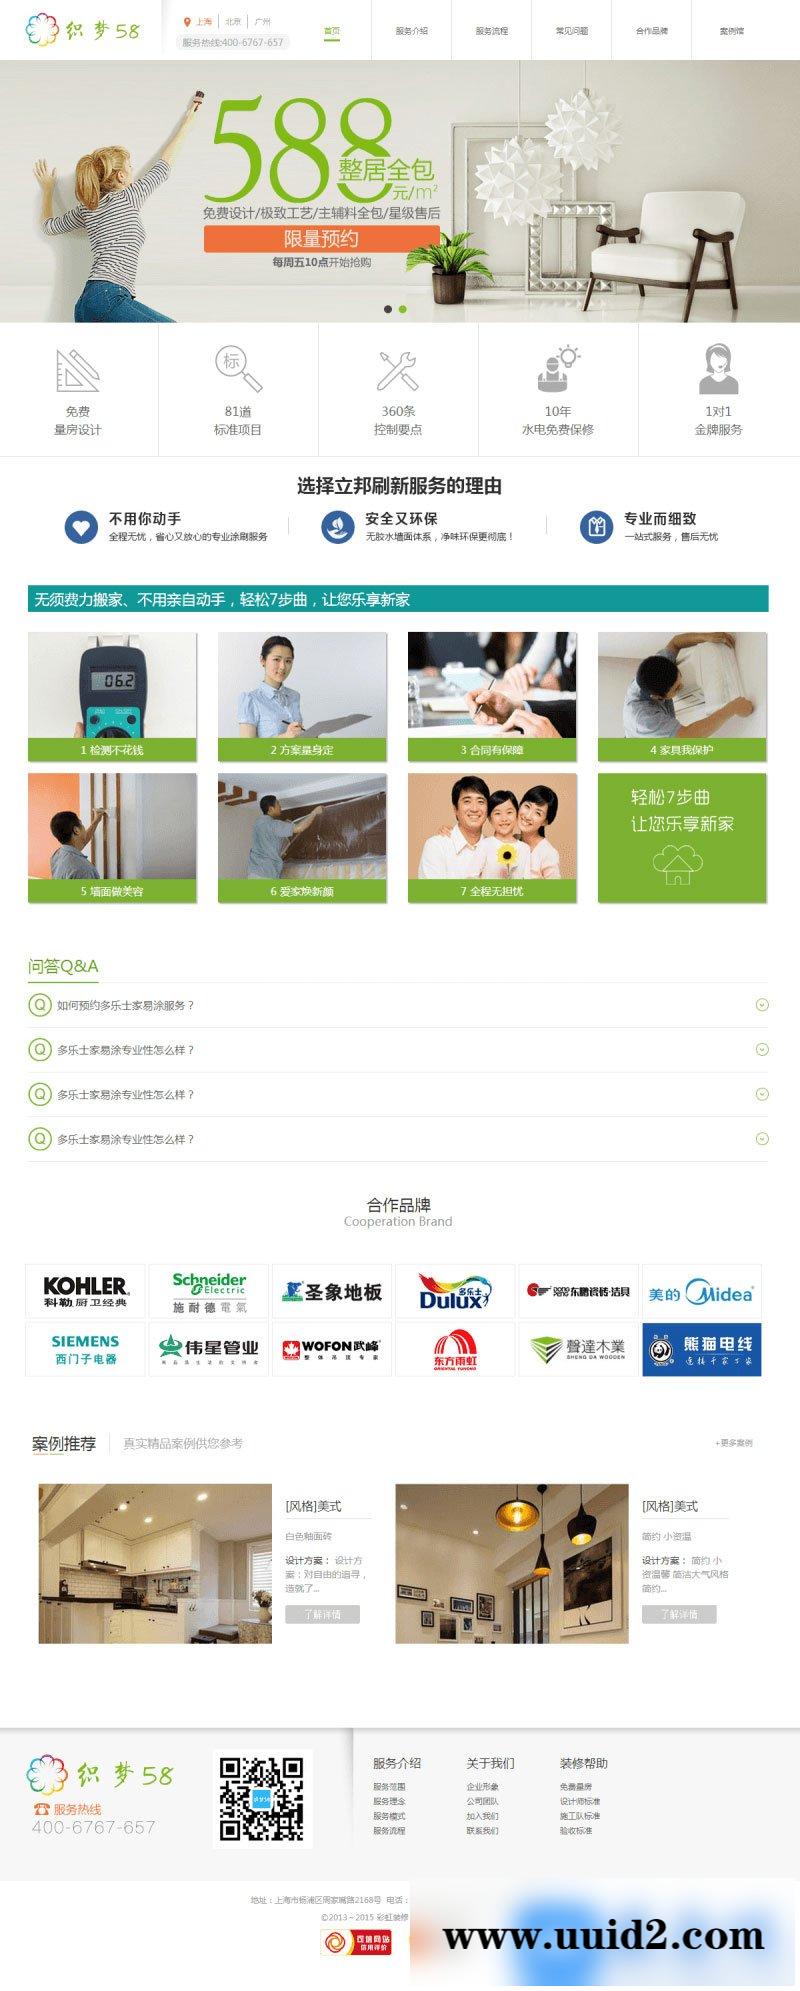 涂刷装修服务公司网站源码 织梦dedecms网站模板